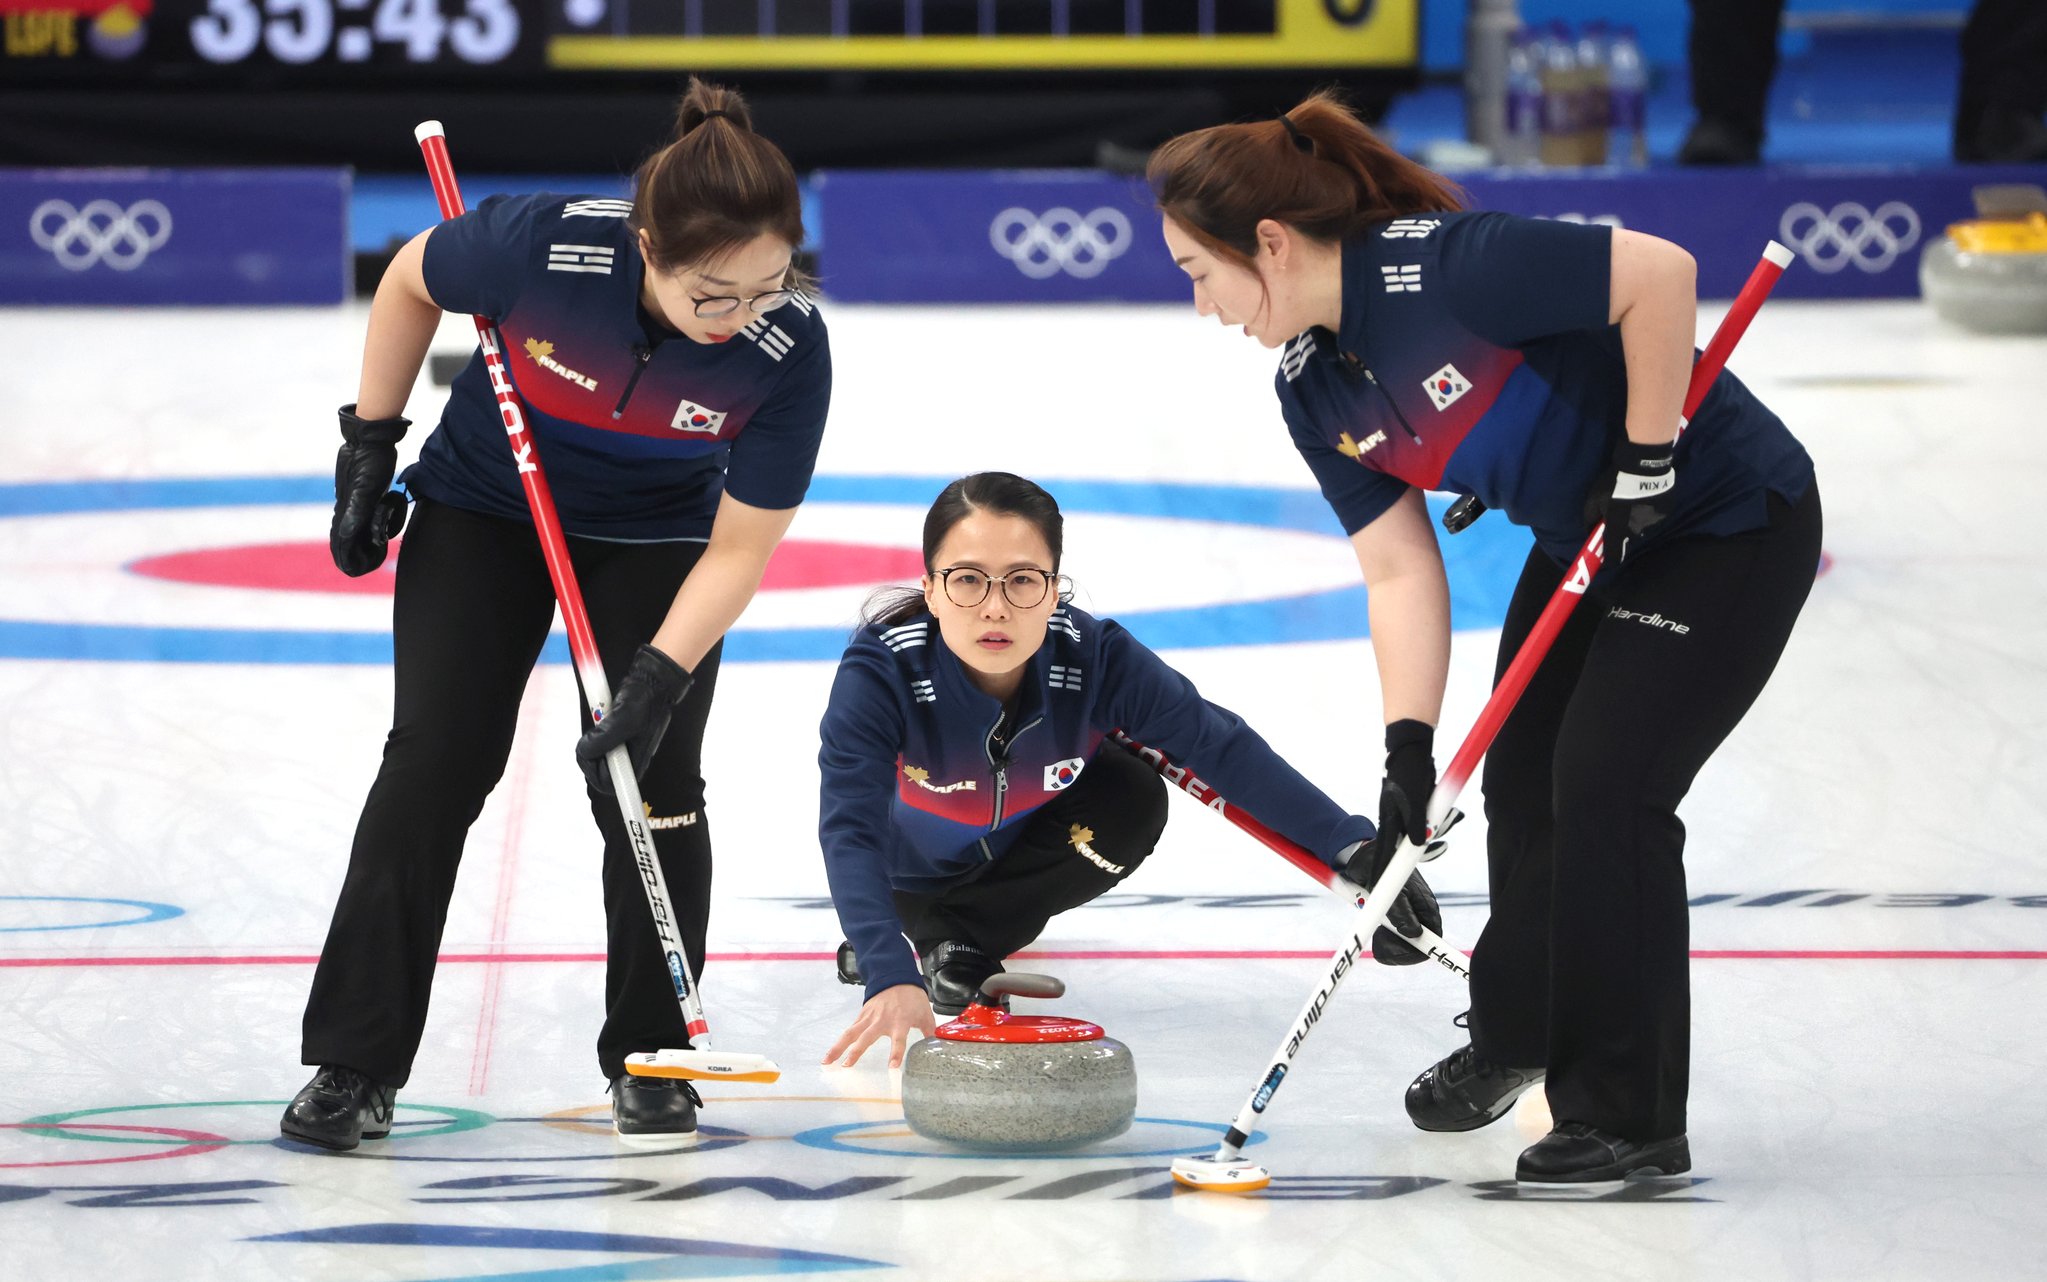 13일 중국 베이징 국립 아쿠아틱 센터에서 열린 2022 베이징 겨울올림픽 컬링 여자 단체전 한국과 중국의 경기에서 스킵 김은정이 스톤을 투구하고 있다. 김경록 기자